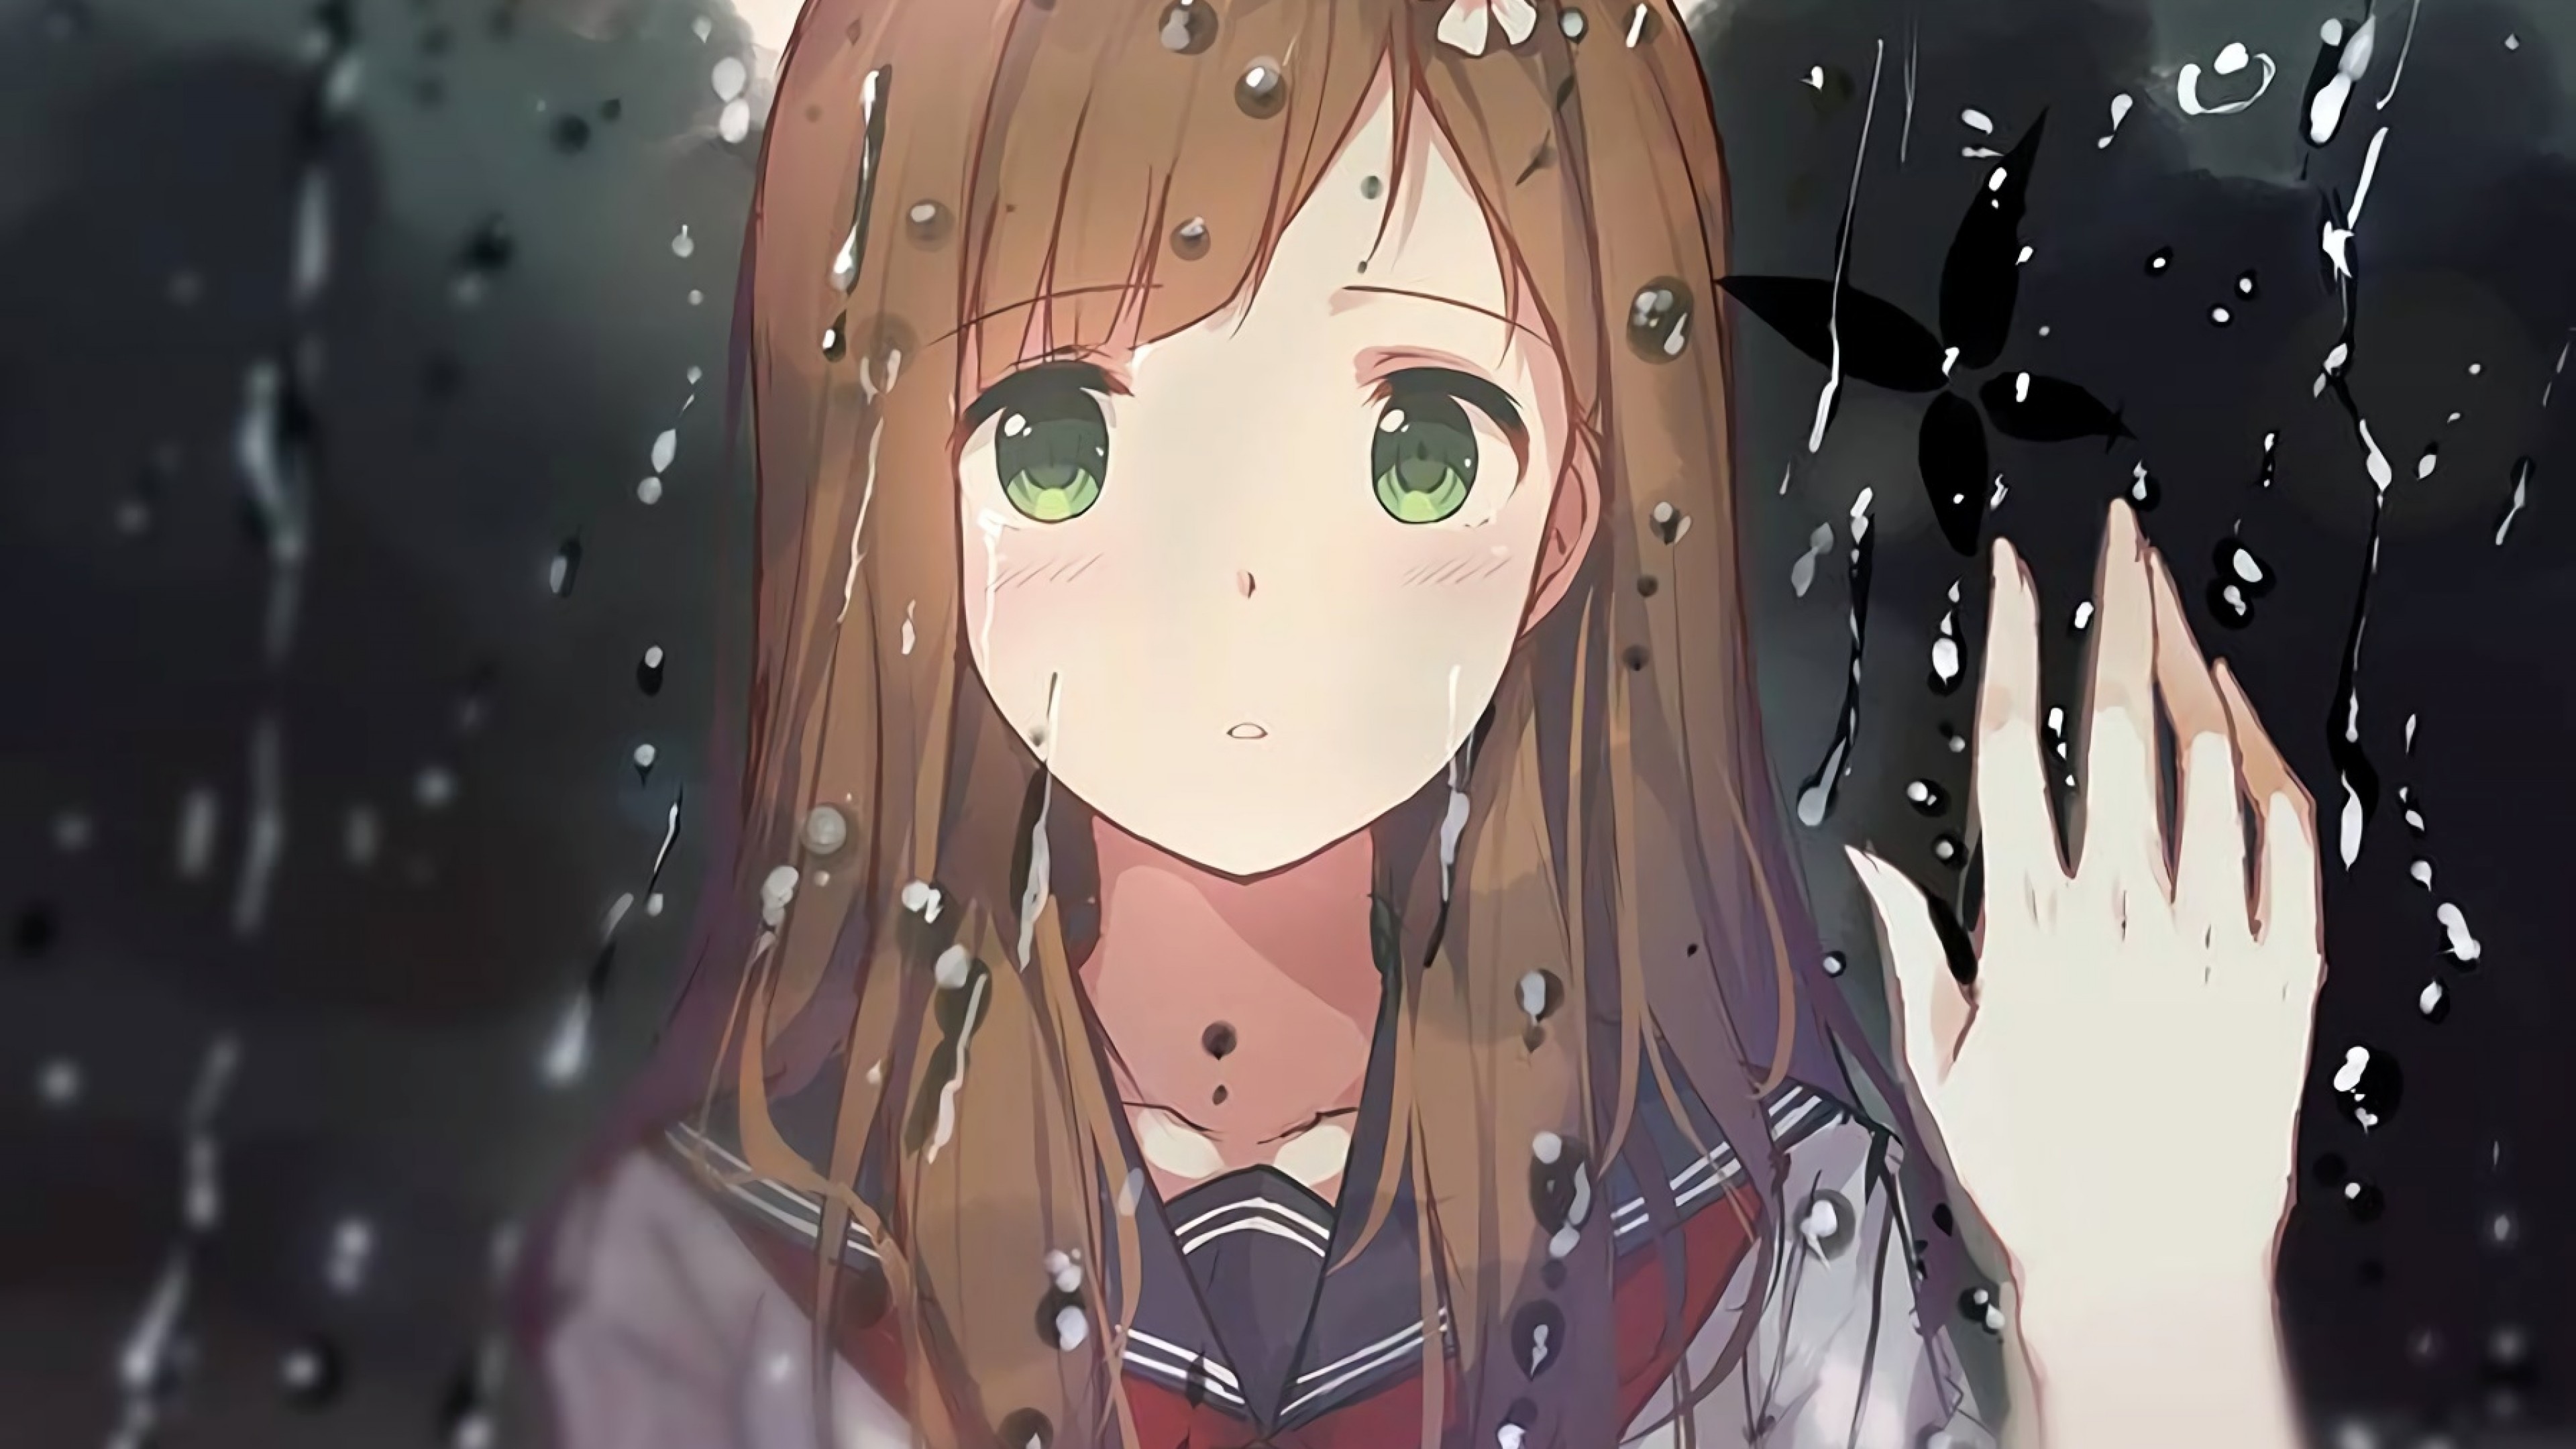 Download mobile wallpaper Anime, Rain, Girl for free.